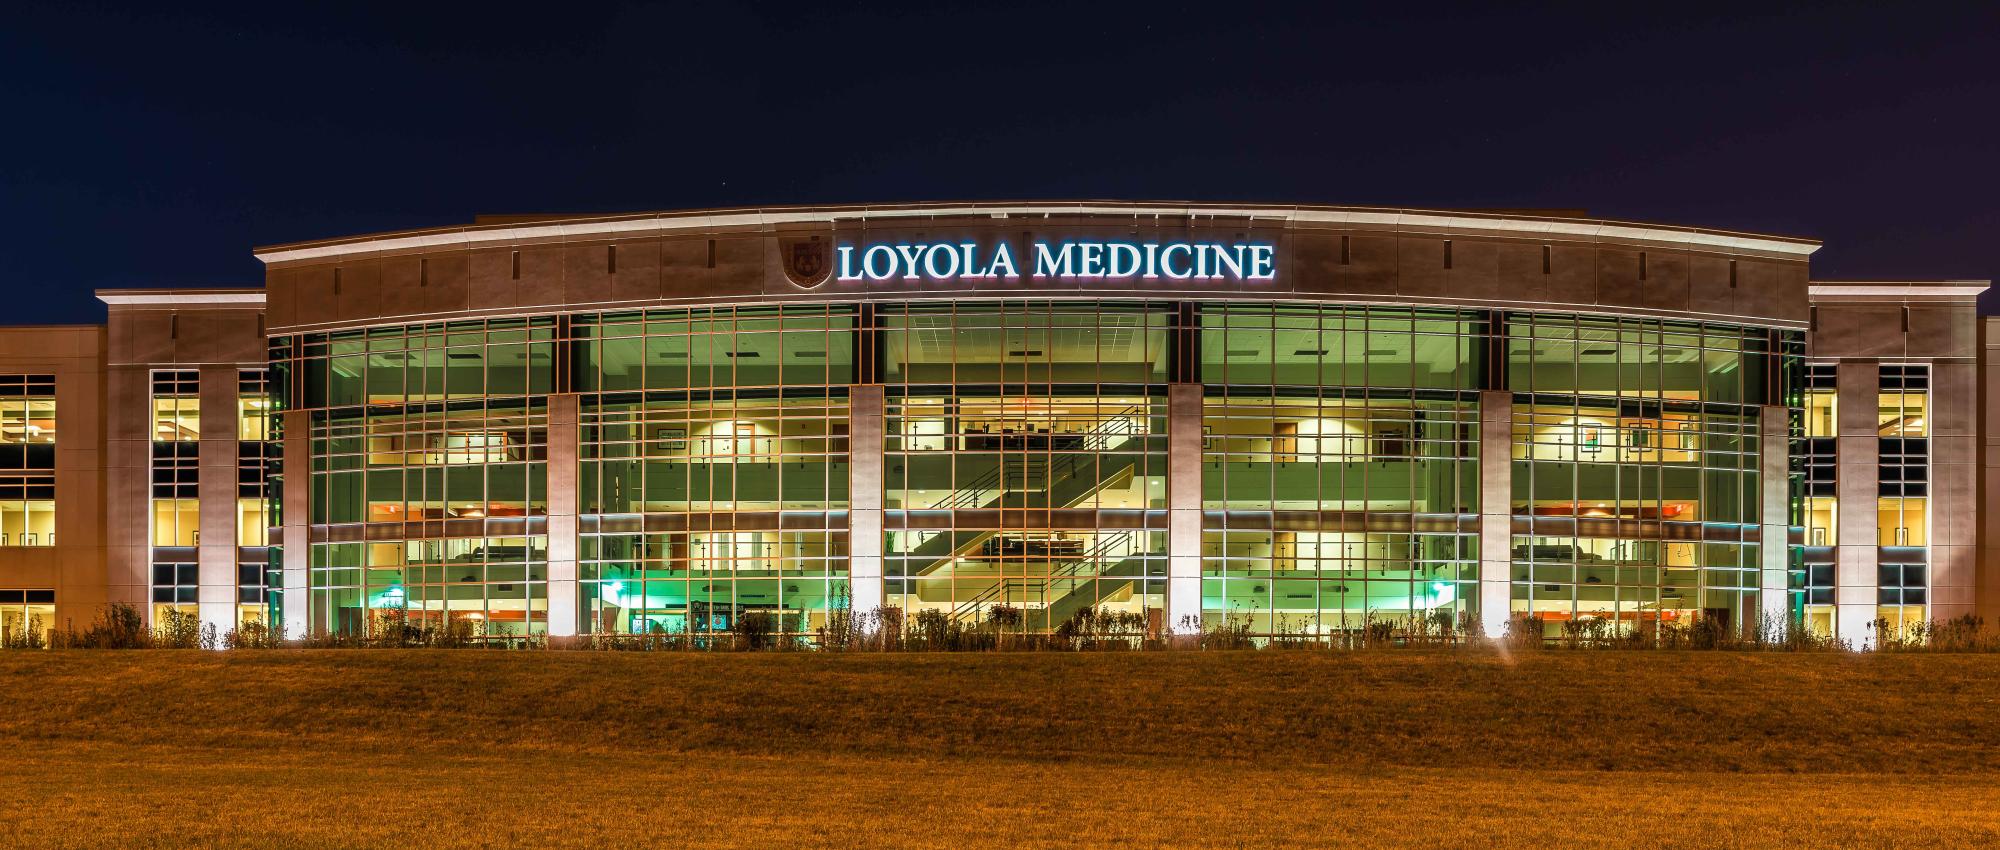 Loyola Medical